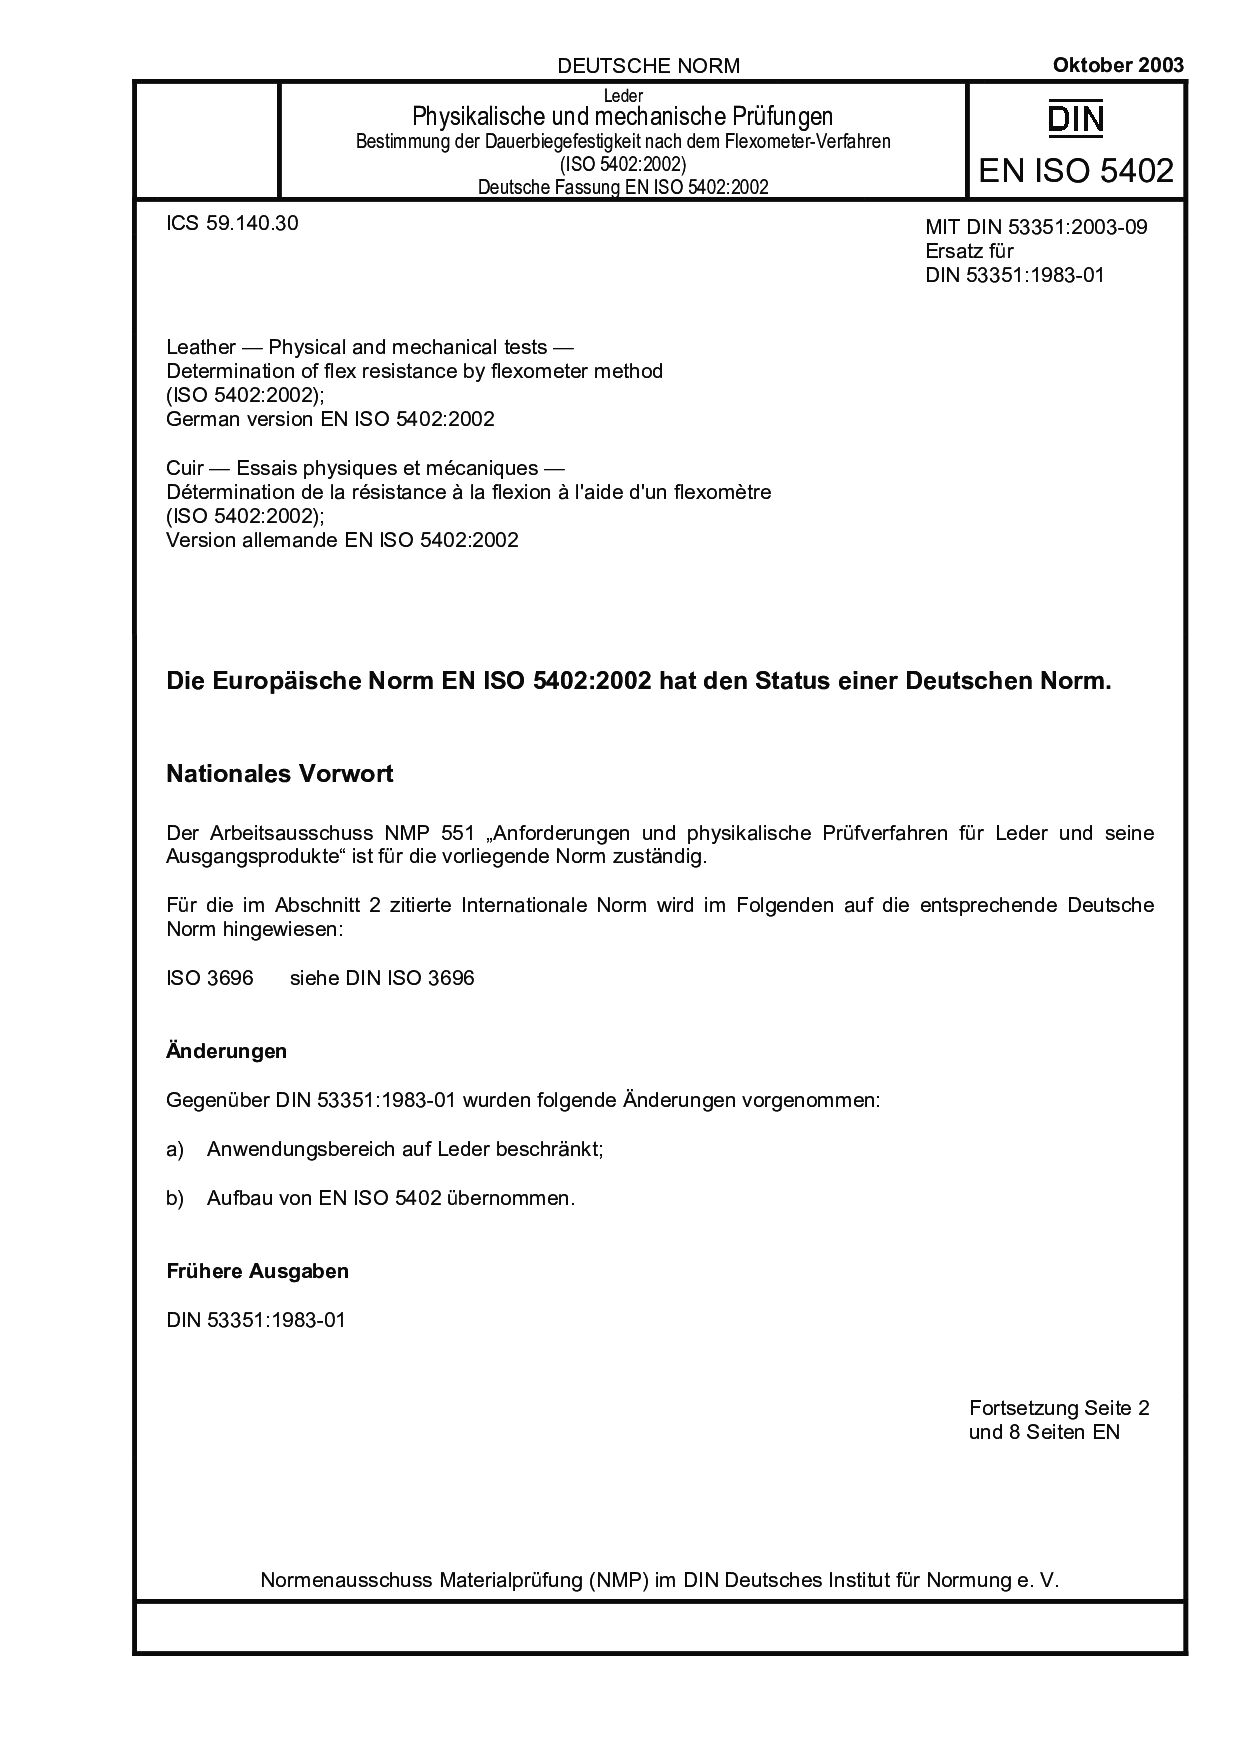 DIN EN ISO 5402:2003